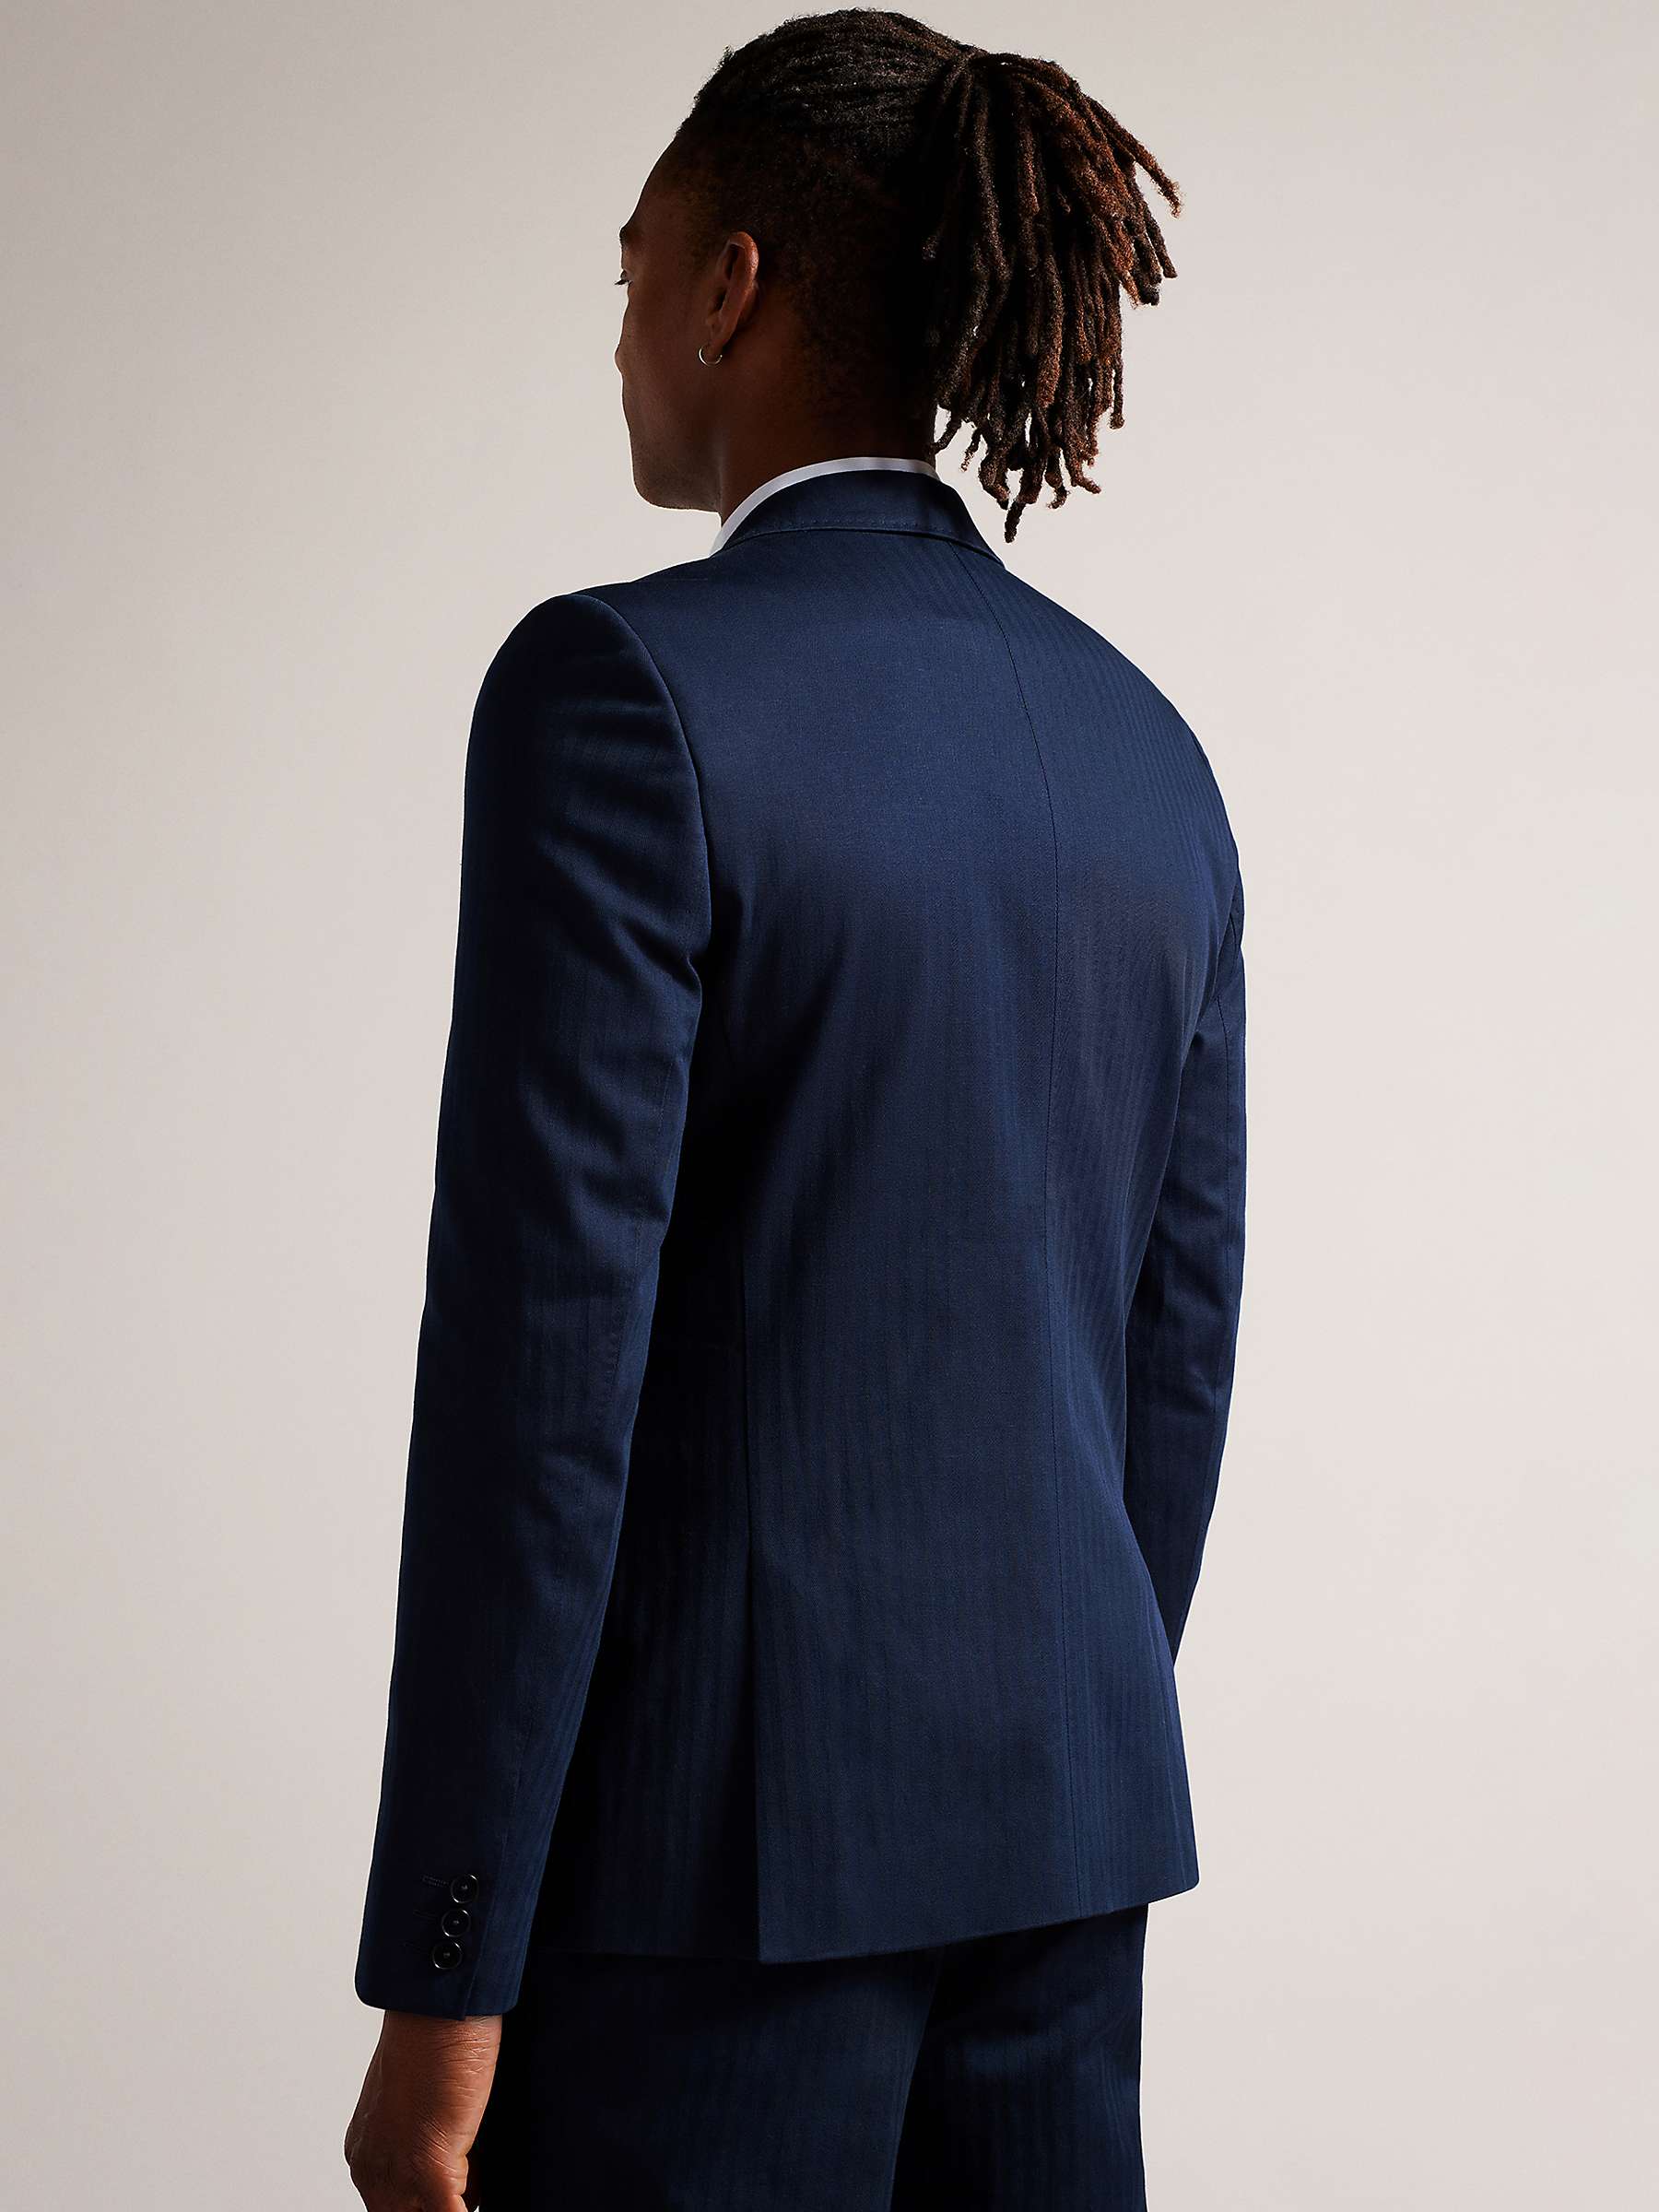 Buy Ted Baker Shakerj Slim Fit Cotton Linen Jacket, Navy Online at johnlewis.com